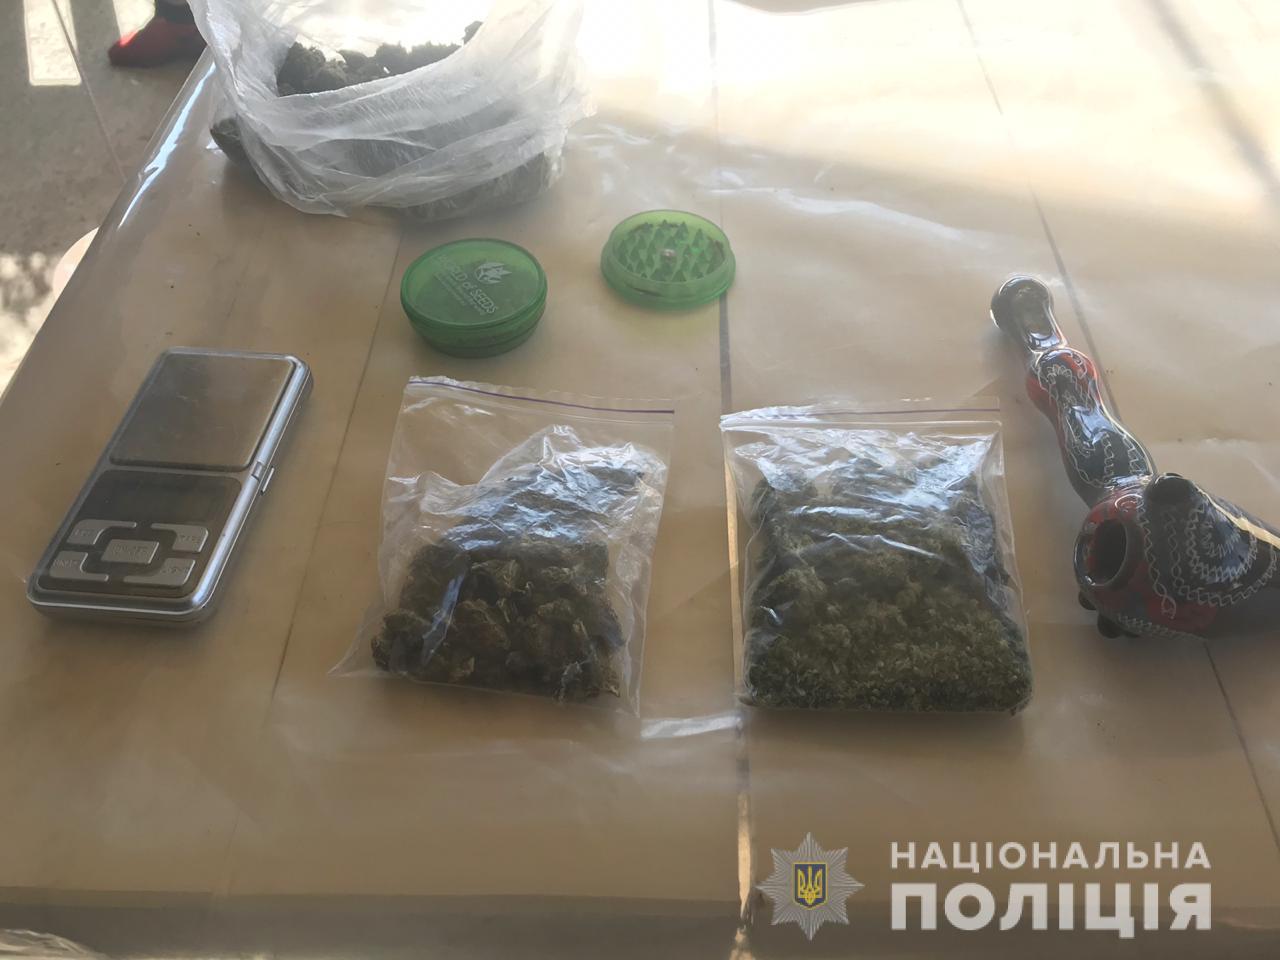 309 стаття ККУ: на Ужгородщині при обшуку виявили незаконні препарати